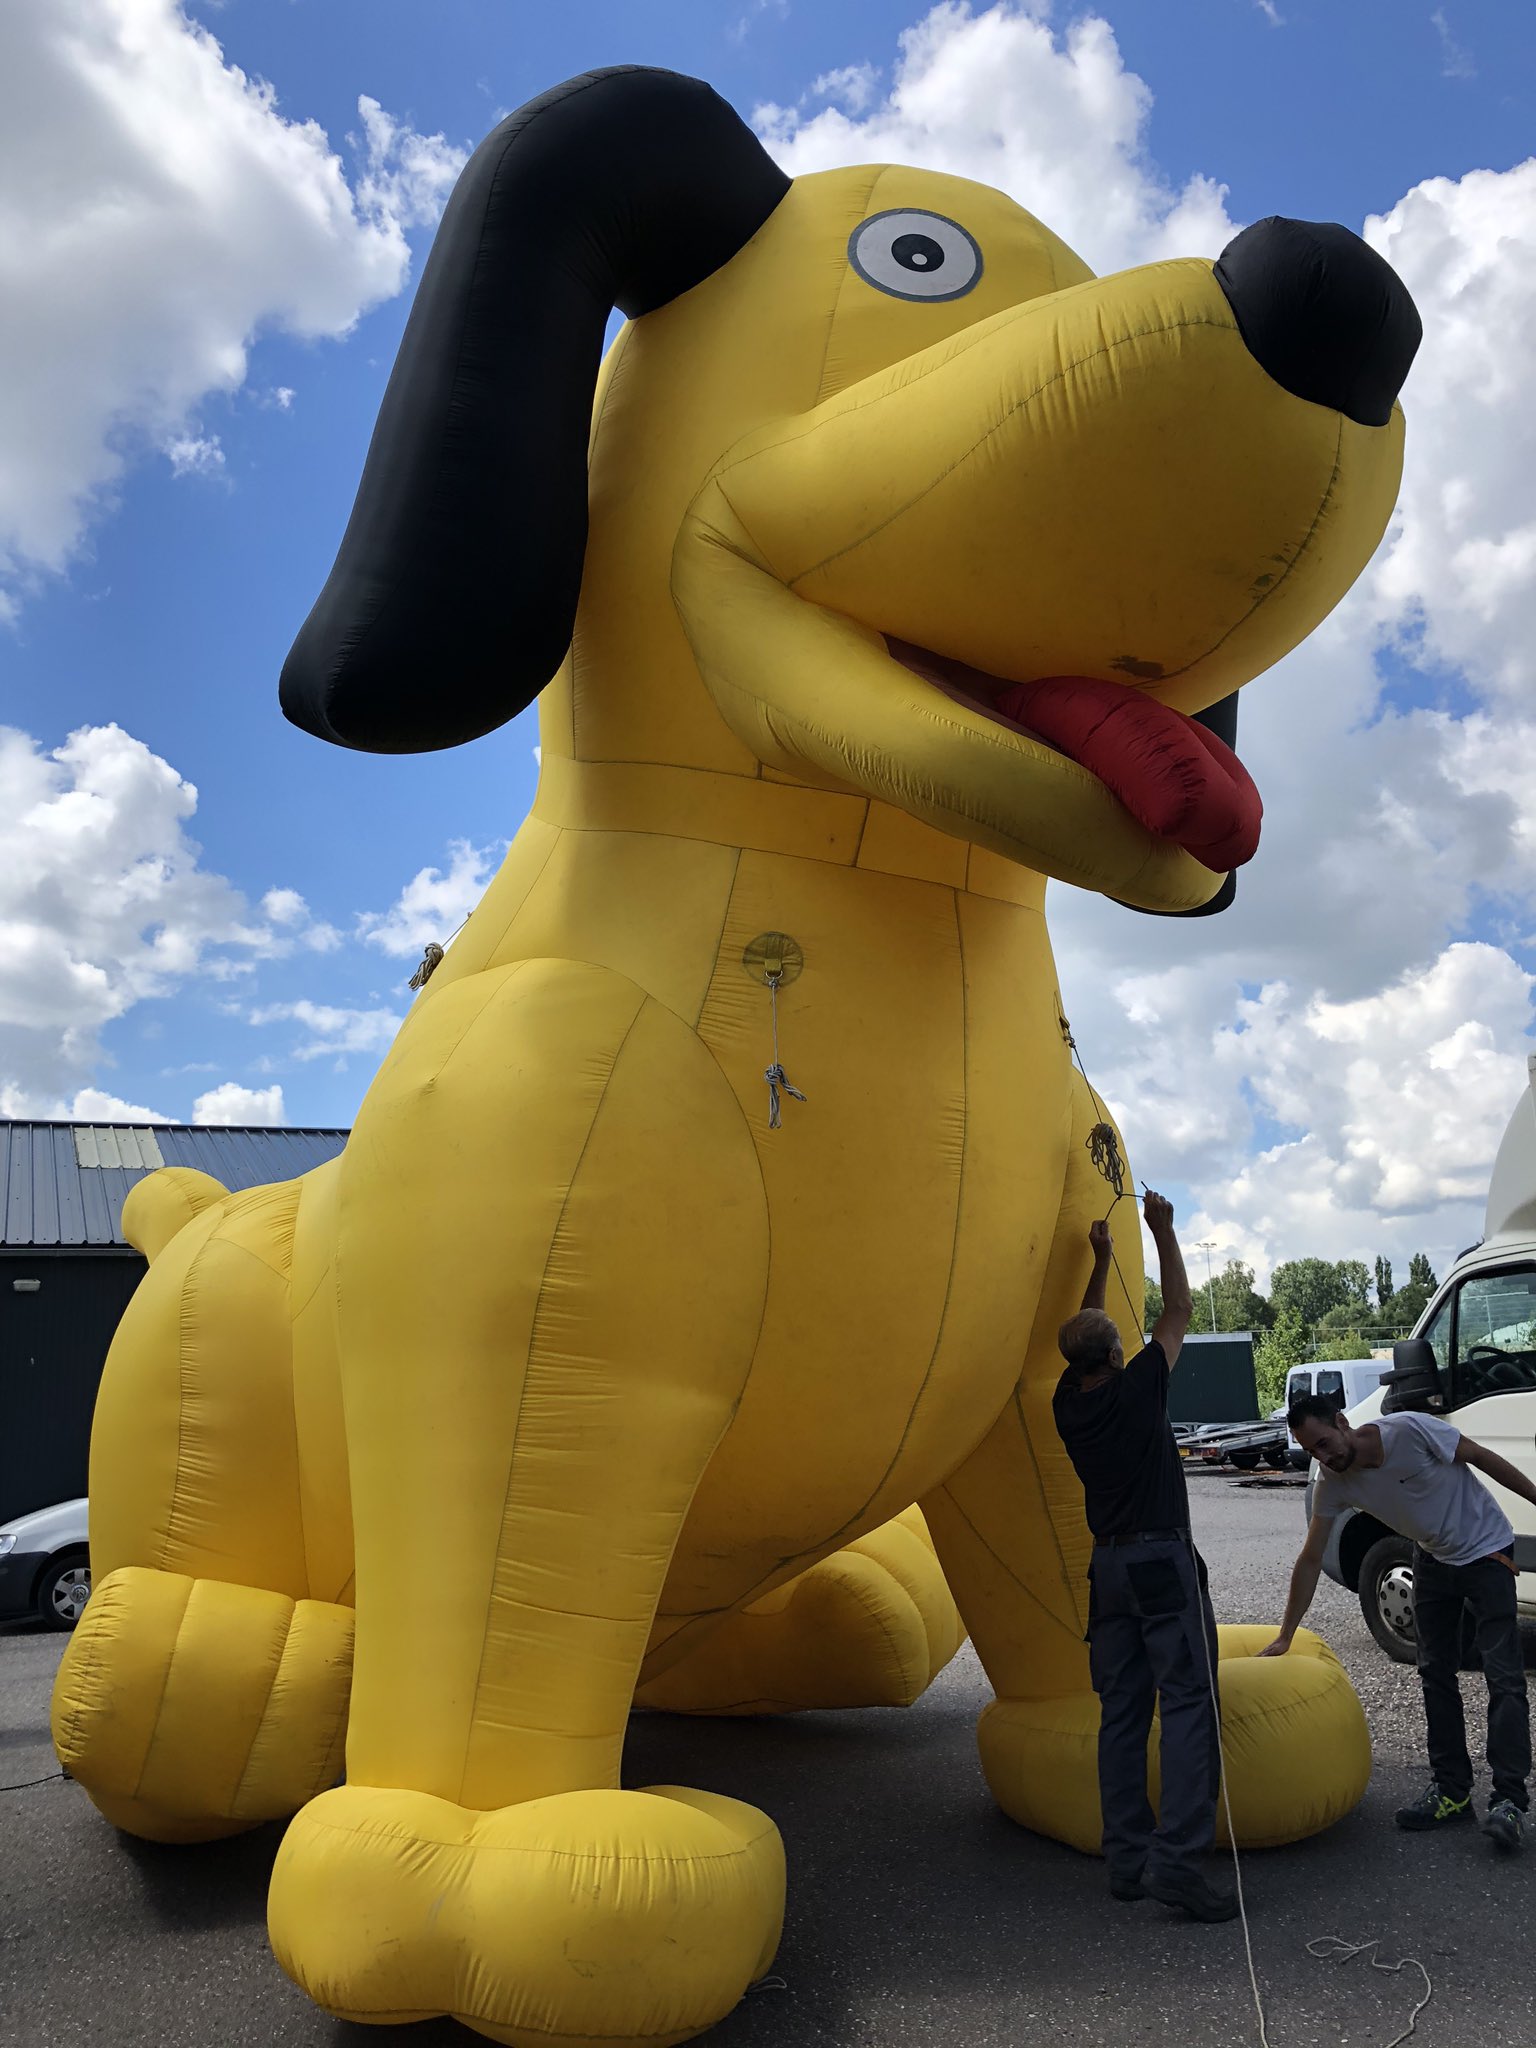 cafetaria Rentmeester Politiek Opblaasfiguur.nl on Twitter: "Huur eens een hond! Deze is opblaasbaar en  wel 6 meter hoog 🤩 https://t.co/IXKUiOFqDQ https://t.co/FTtXC66Jza" /  Twitter